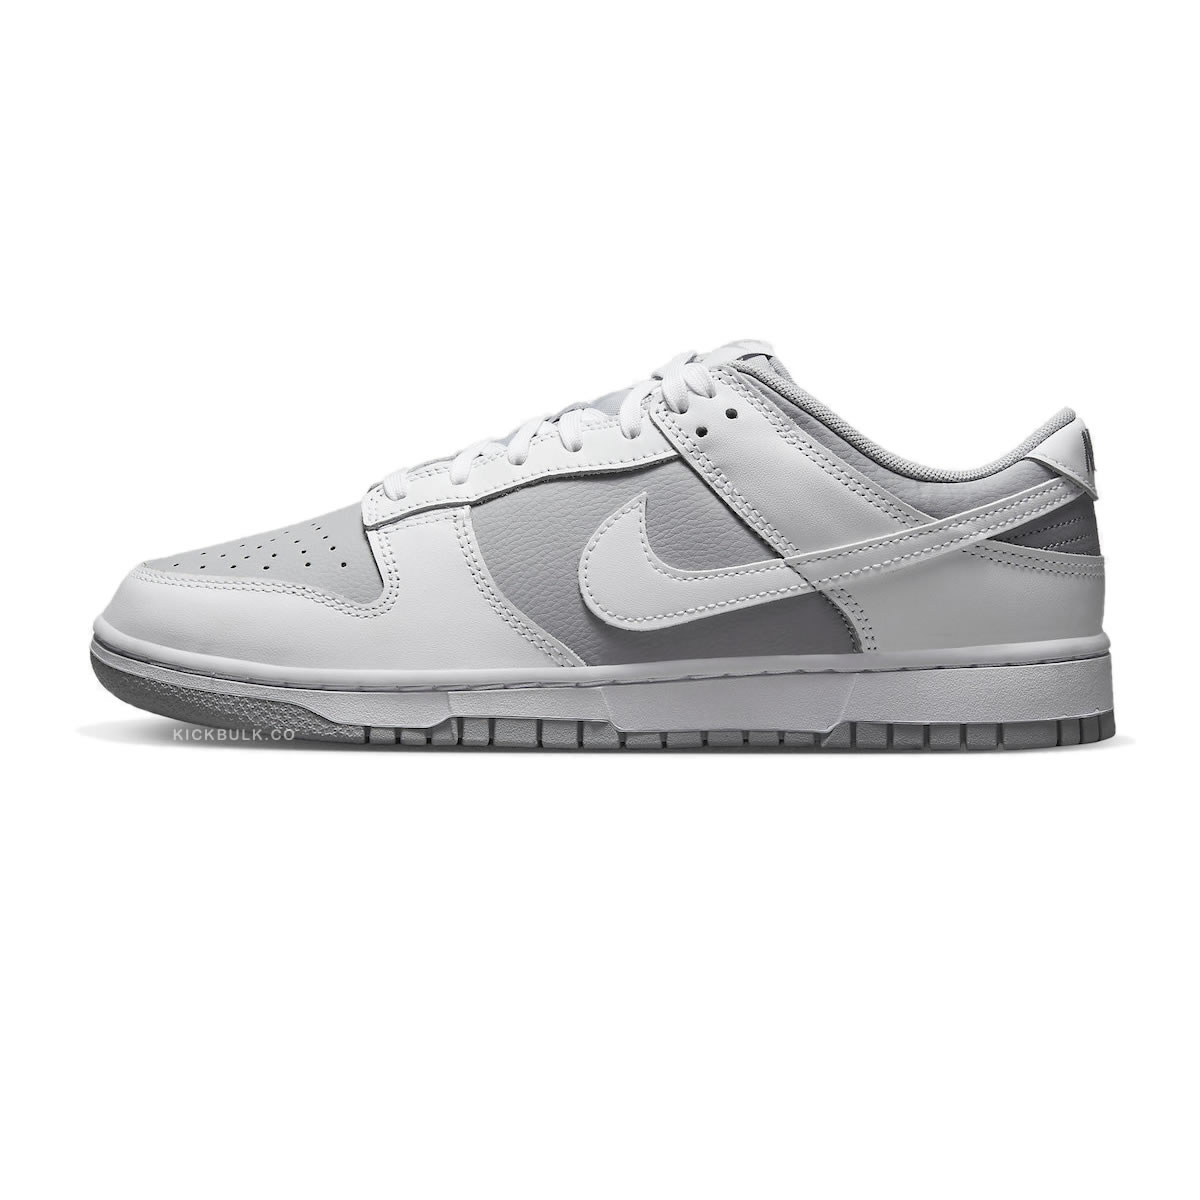 Nike Dunk Low White Neutral Grey Dj6188 003 1 - kickbulk.co